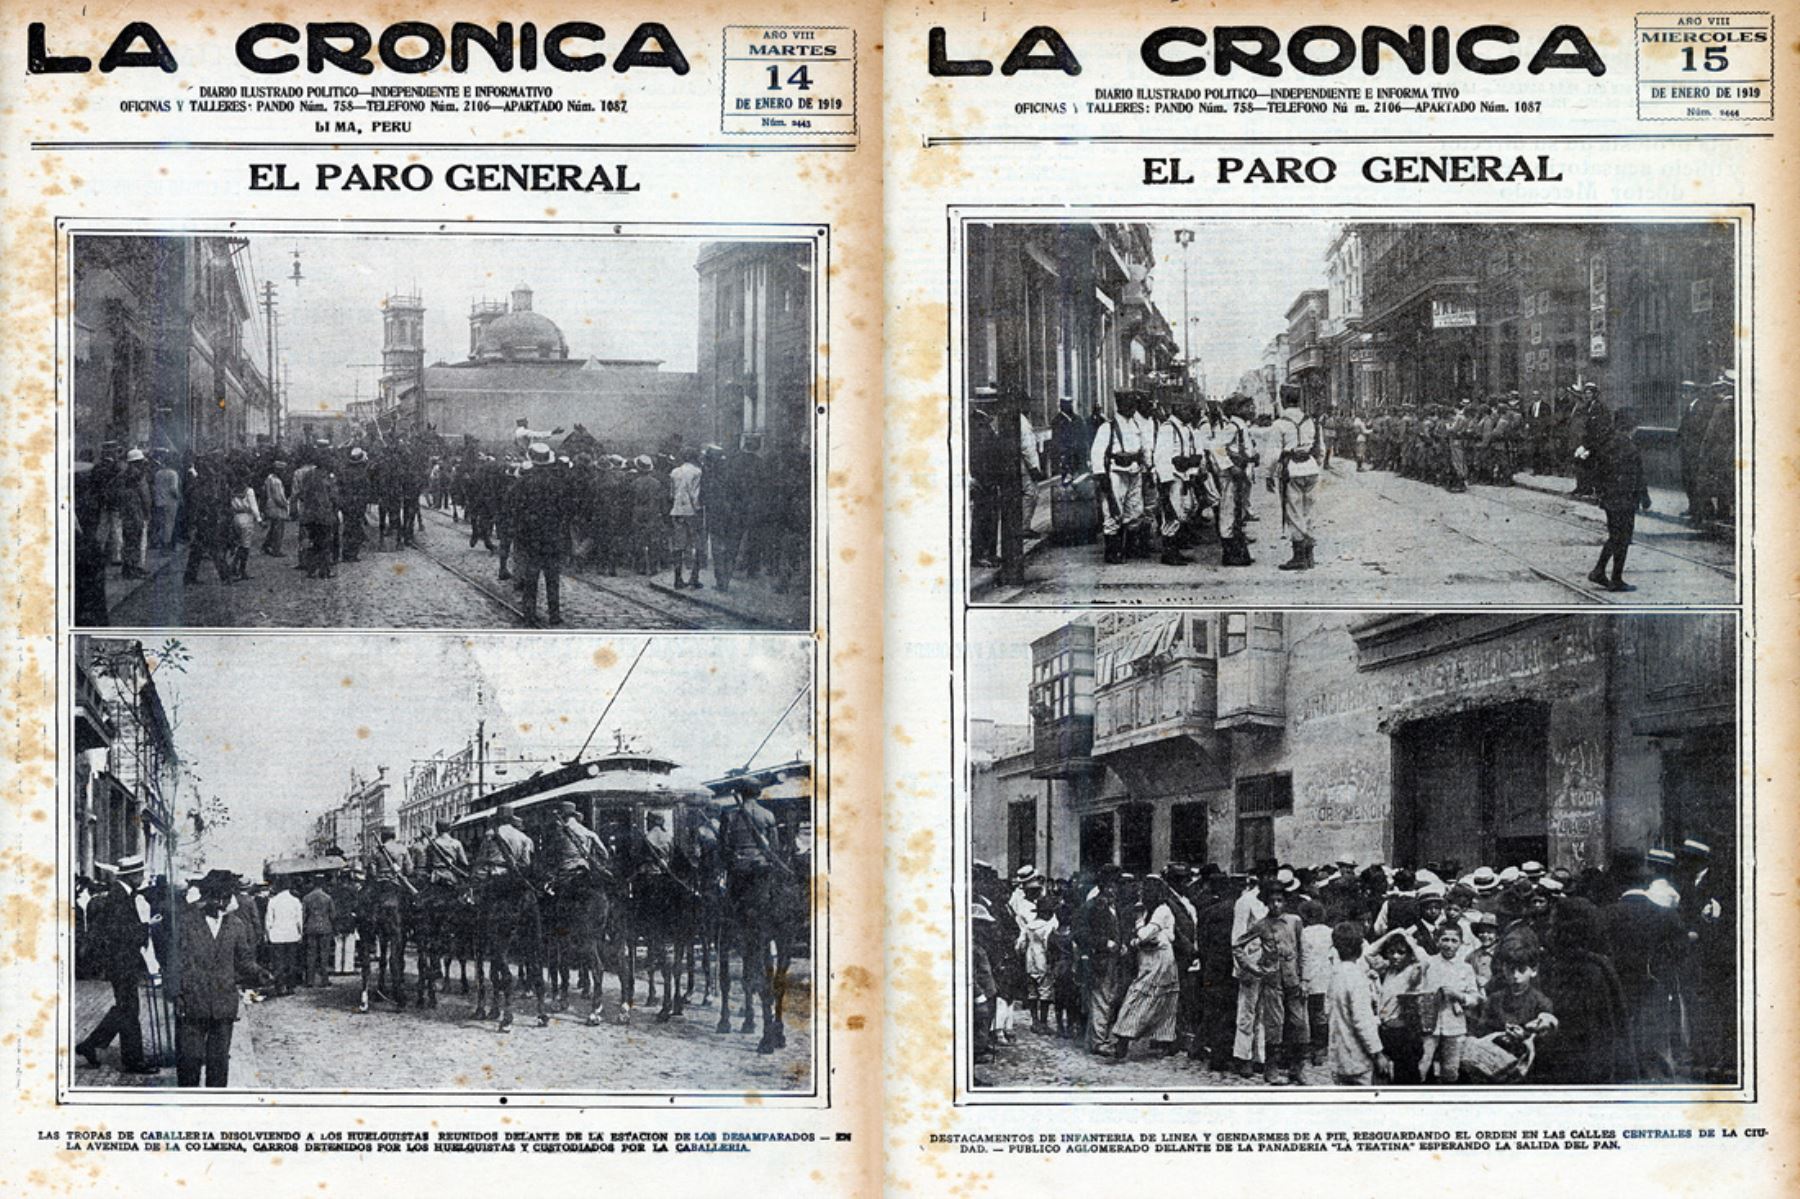 Portadas del diario La Crónica de los días 14 y 15 de enero de 1919 que dan cuenta del paro general acatado por diversos gremios de trabajadores en demanda de la jornada de 8 horas laborales. Foto: ANDINA/archivo